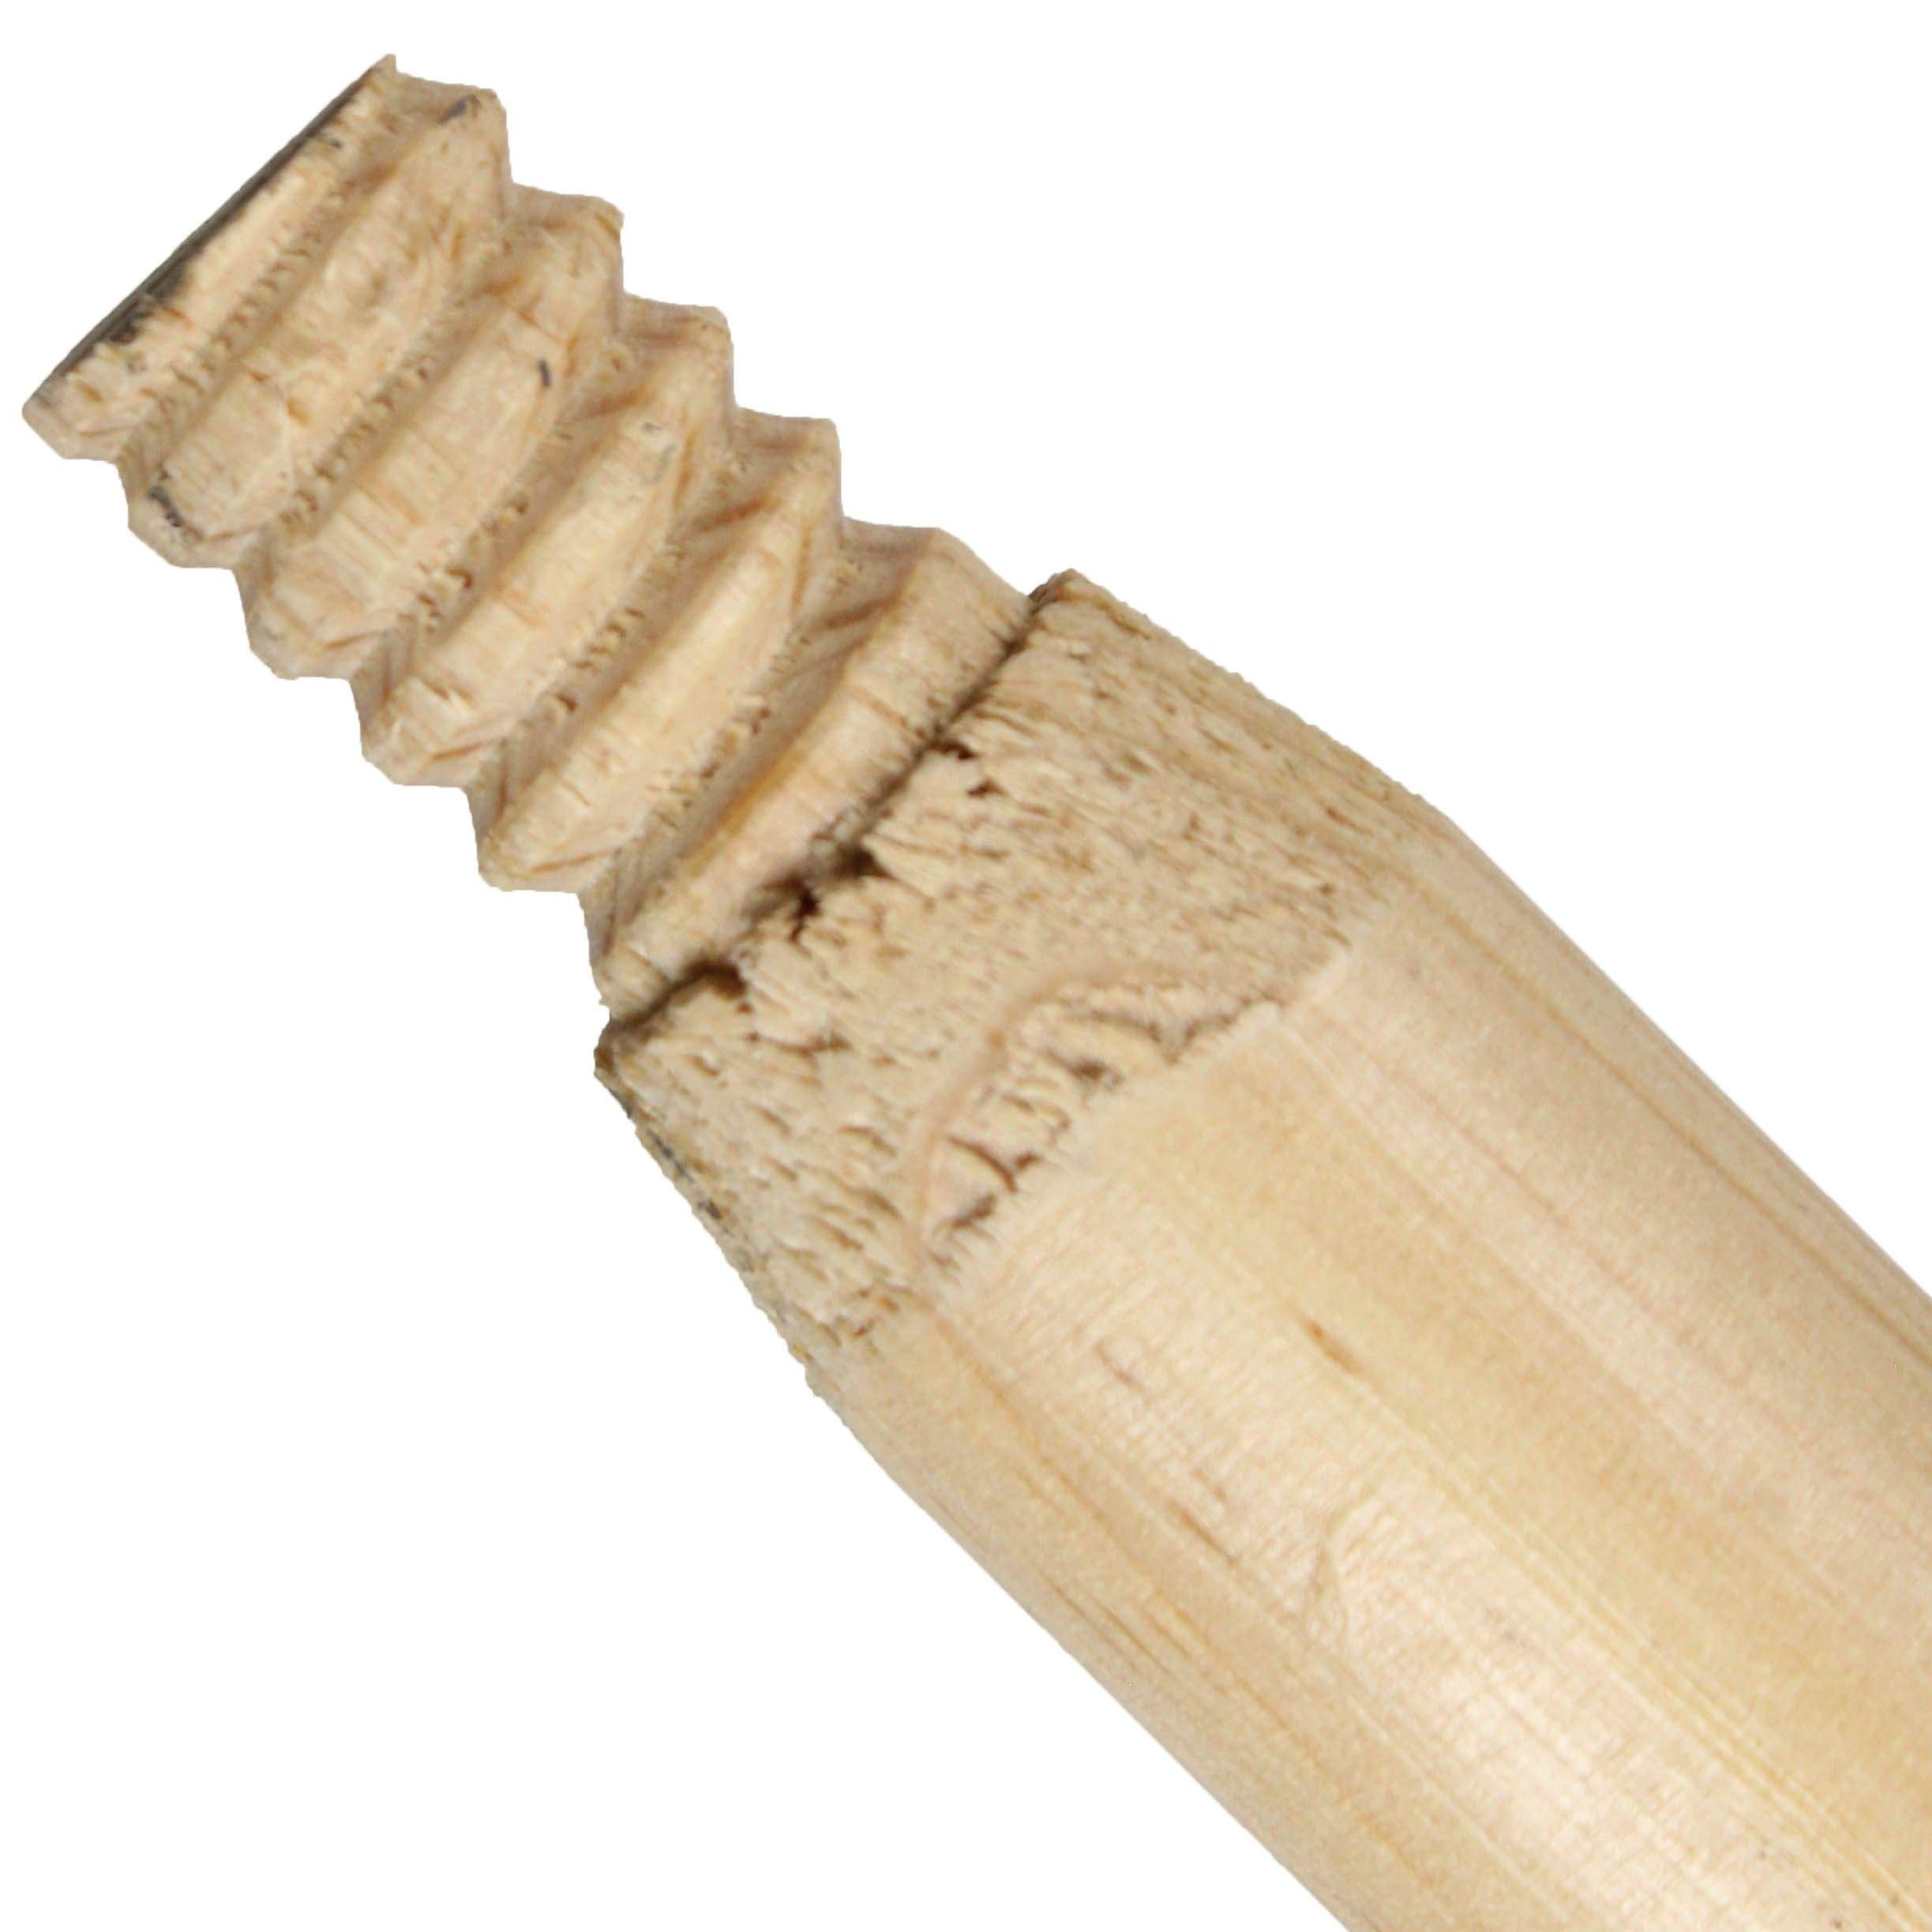 60 Wooden Broom Handle –